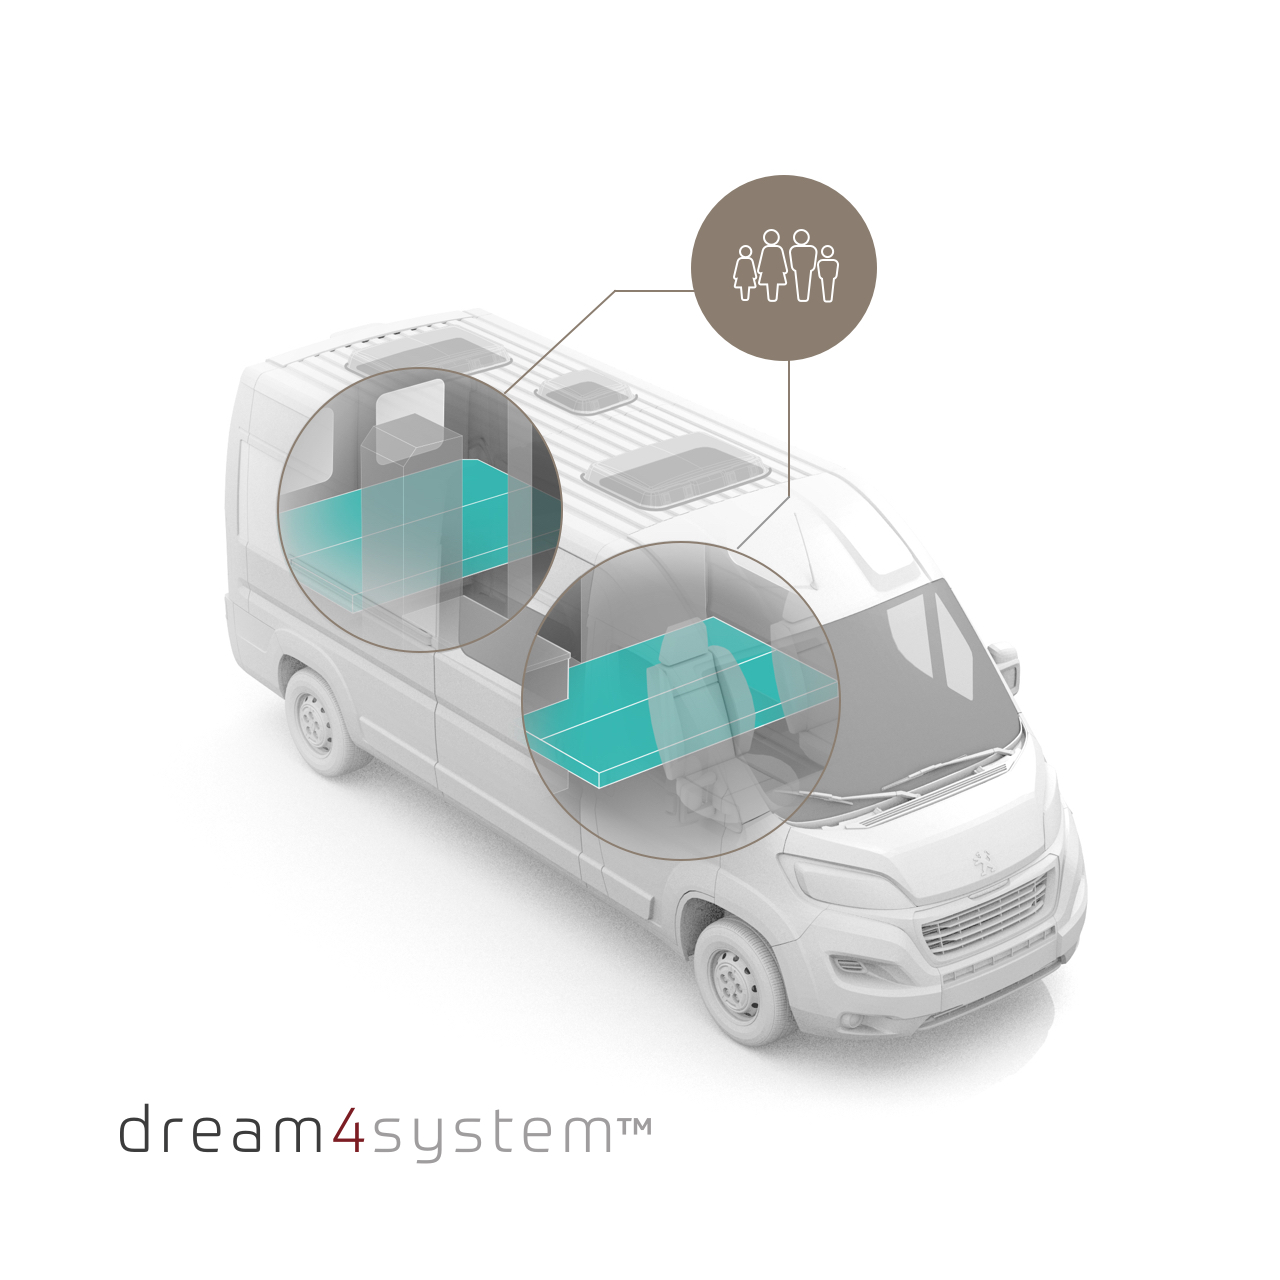 Autohaus Lorenzen – Tourne Wohnmobil – Dream4system